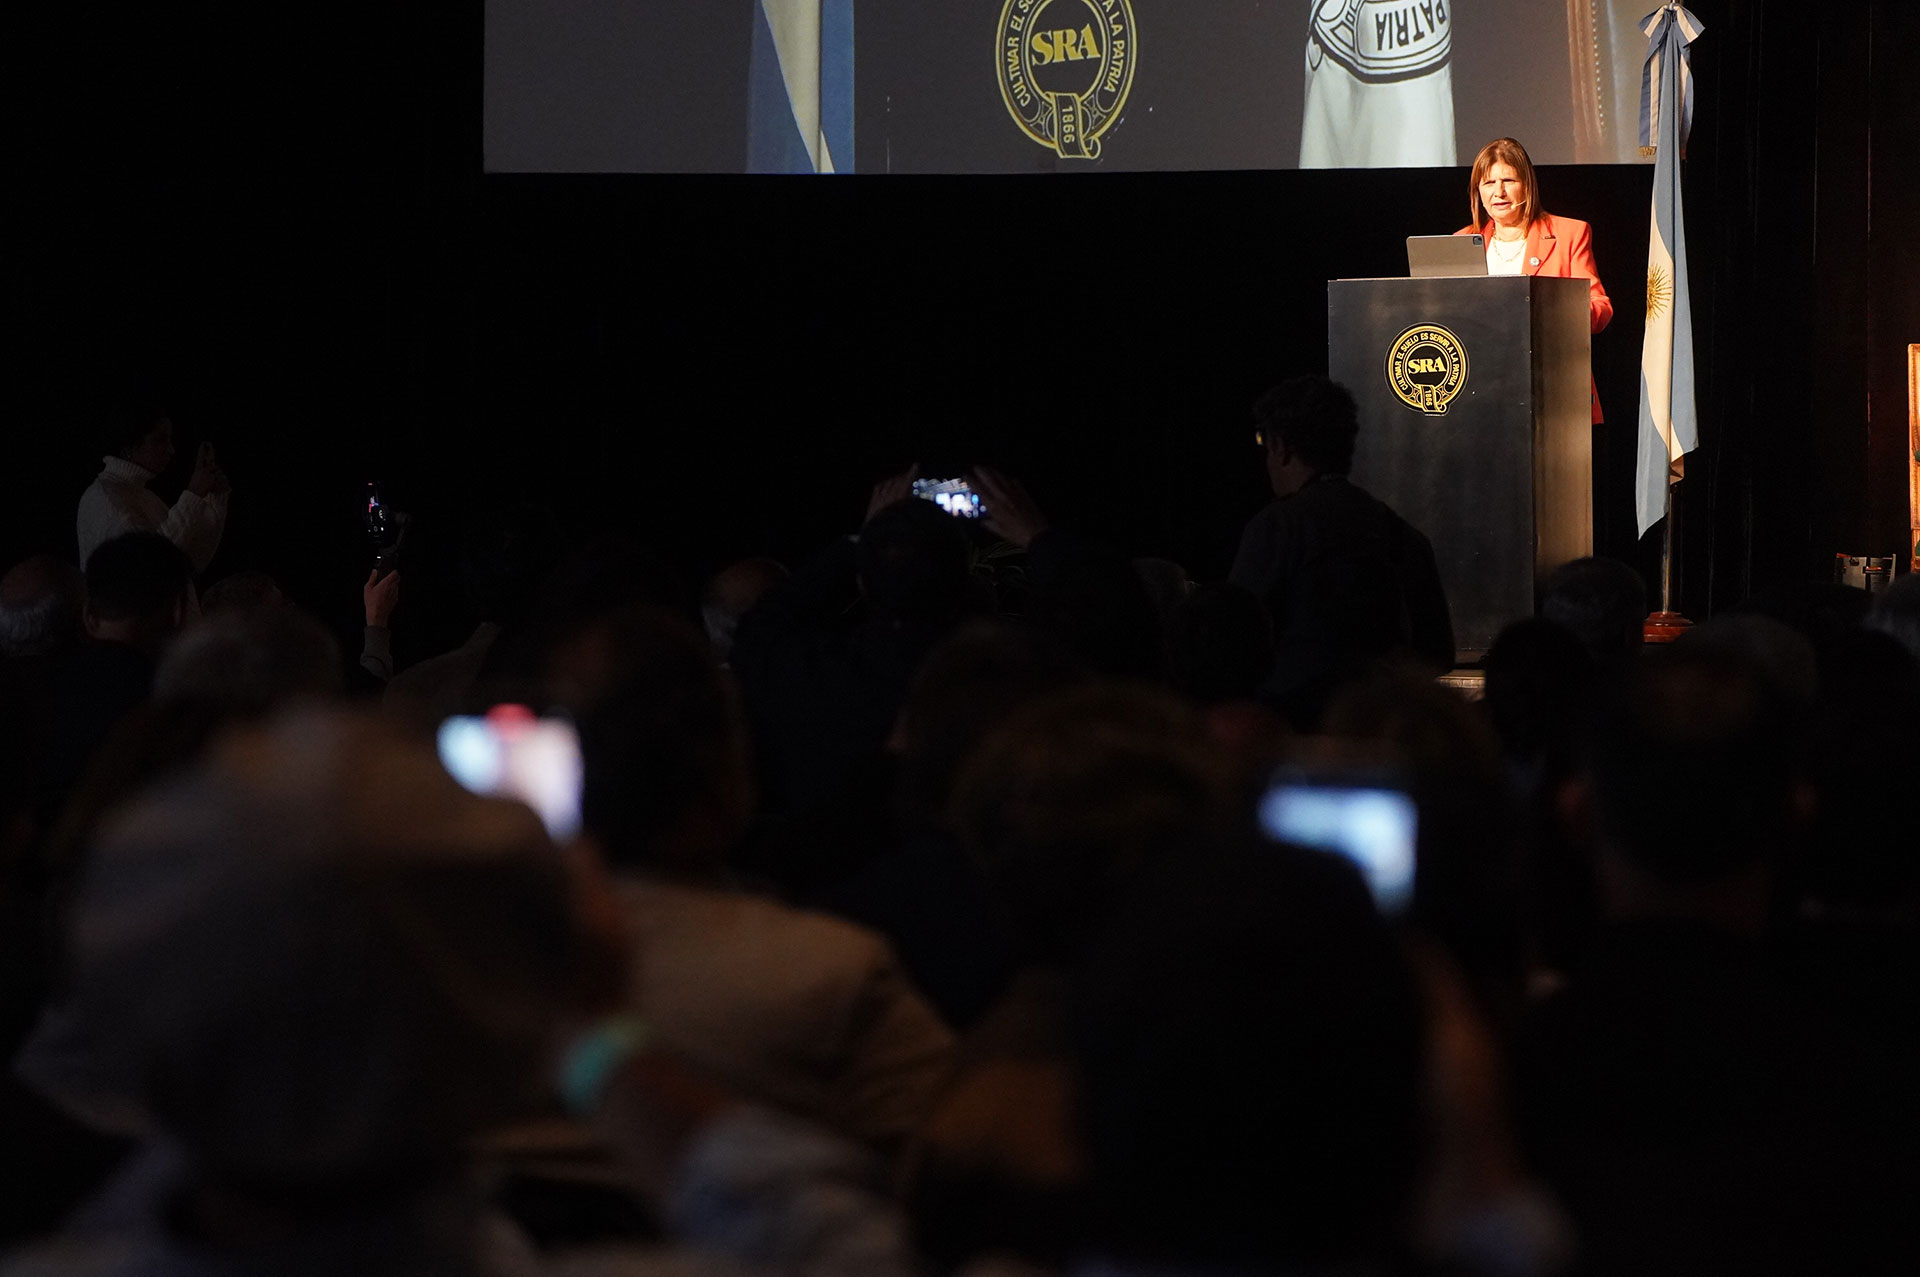 La presidenta del PRO eligió hablar del futuro y cerró la polémica por las elecciones en la Ciudad de Buenos Aires